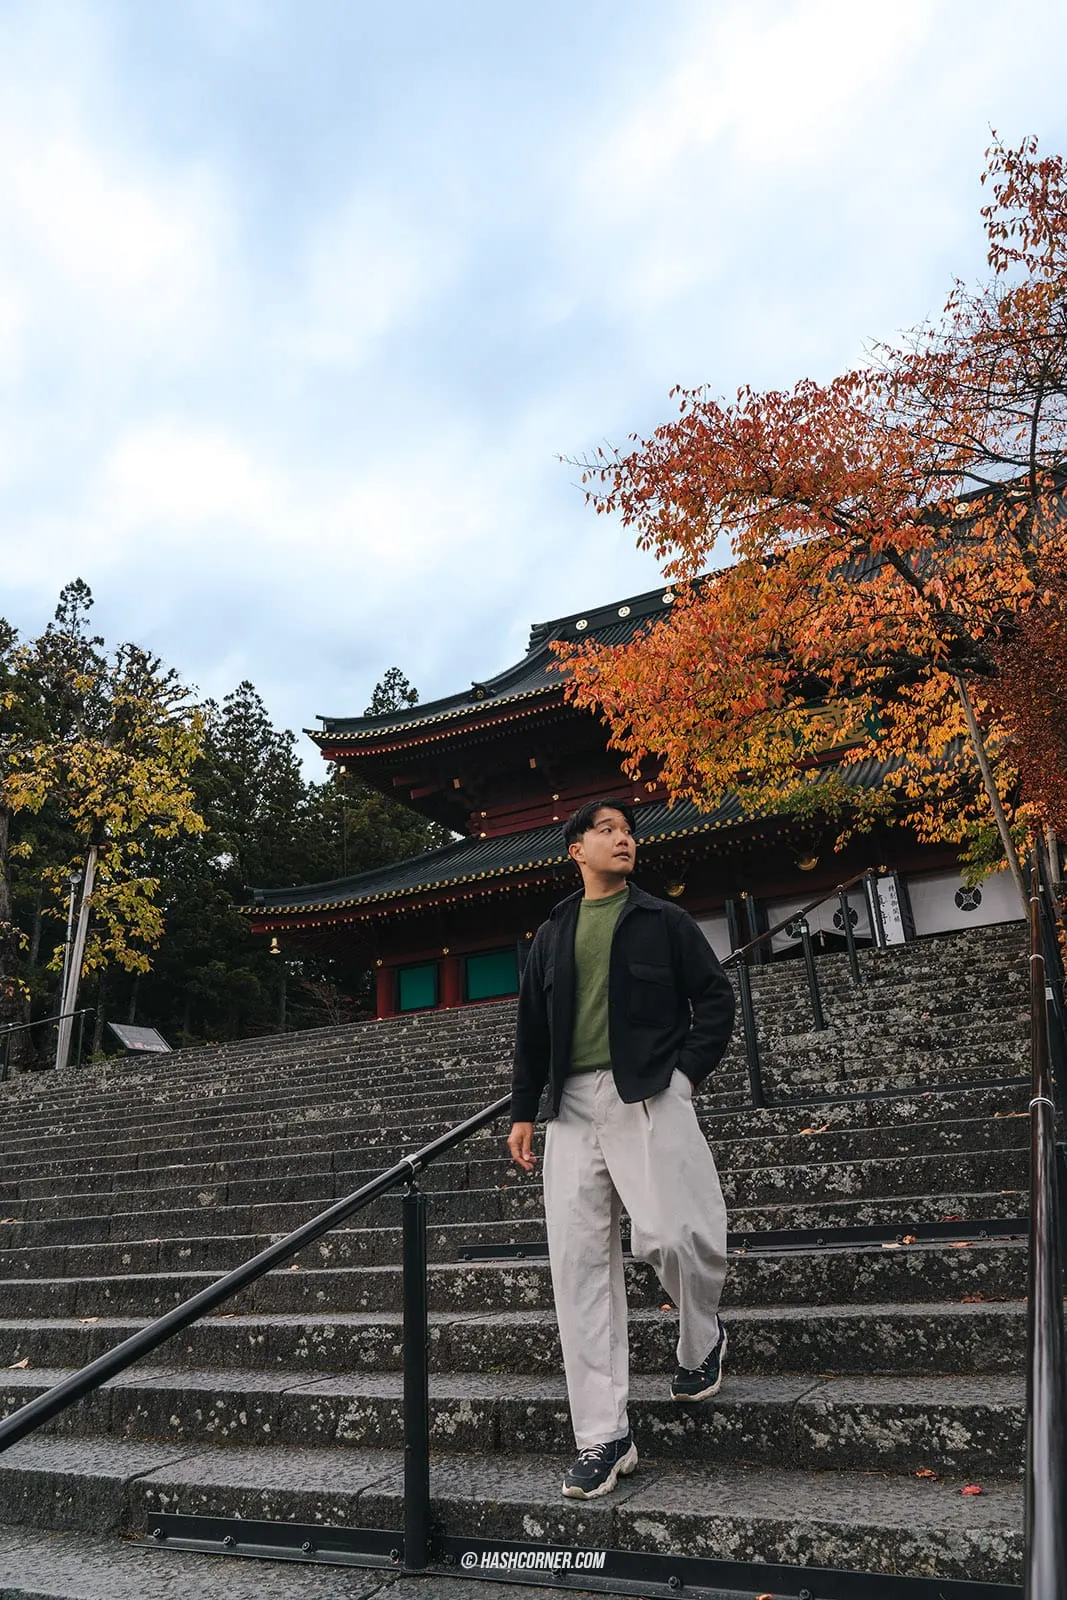 รีวิว วัดรินโนจิ (Rinnoji Temple) x นิกโก้ วัดมรดกโลก 1,250 ปี